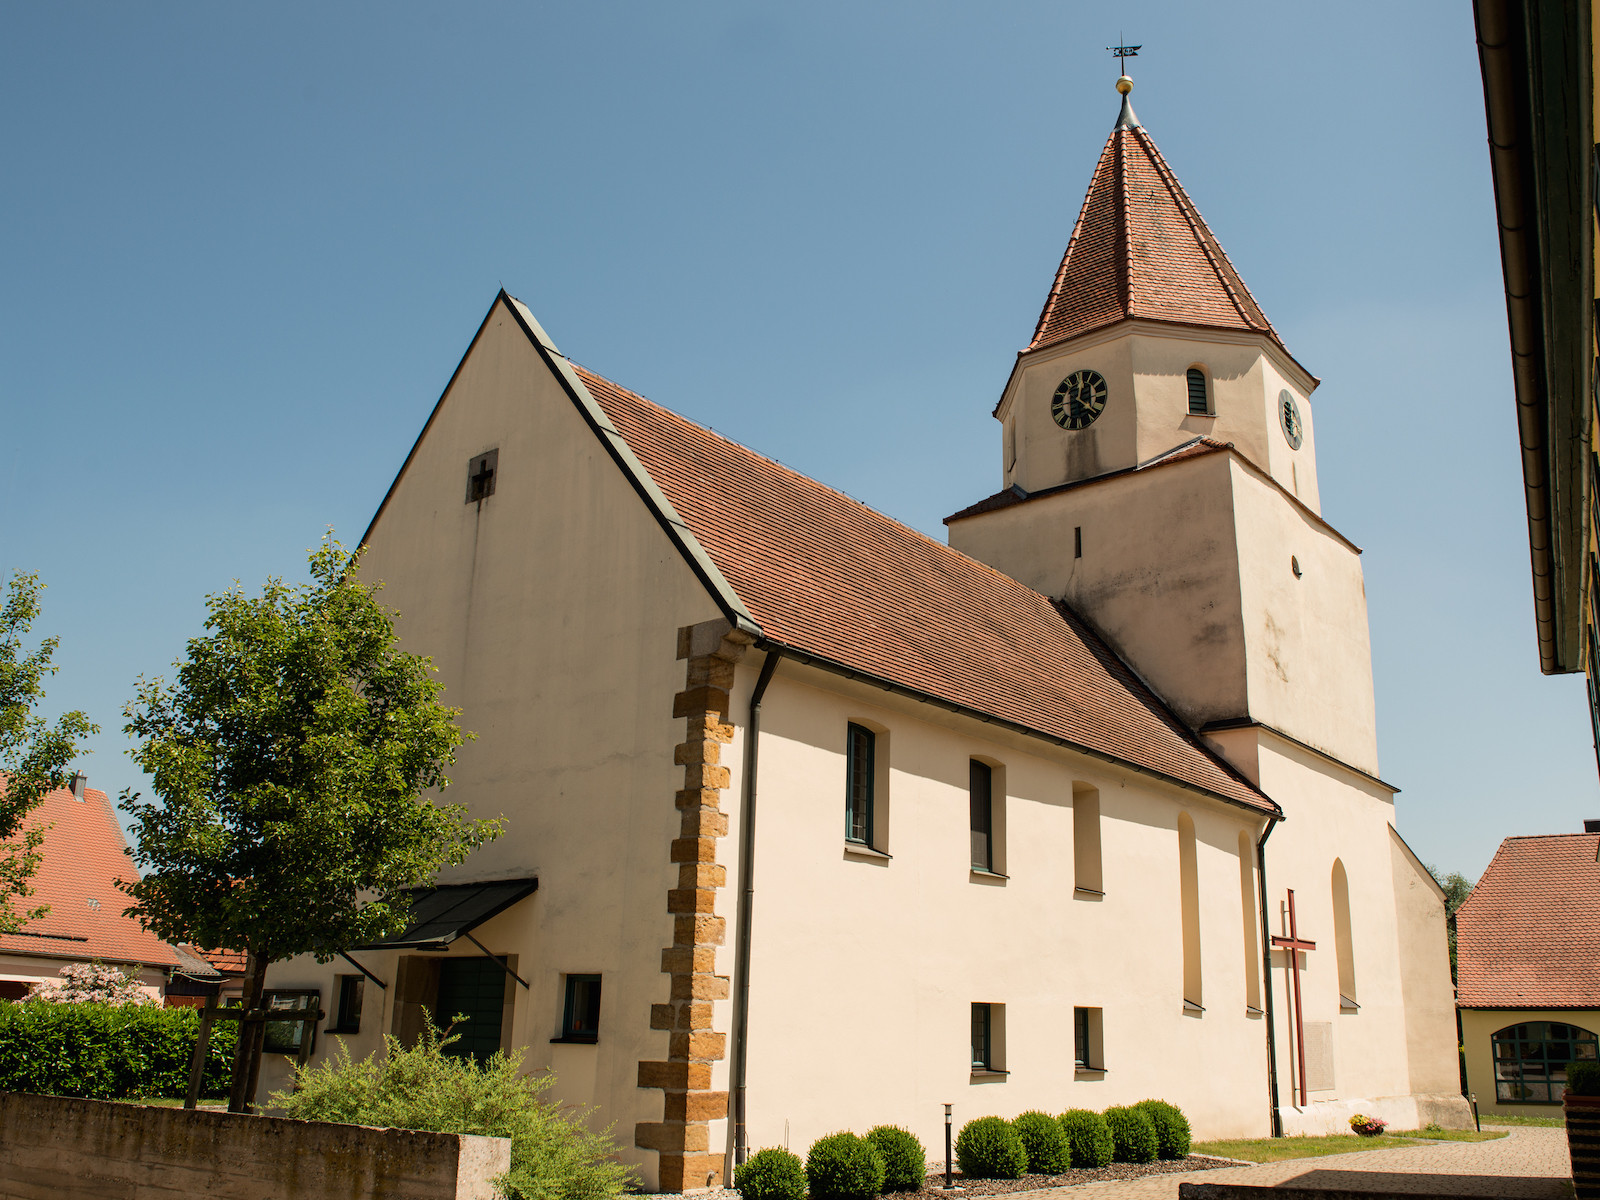                                                     St. Bartholomäus in Frankenhofen                                    